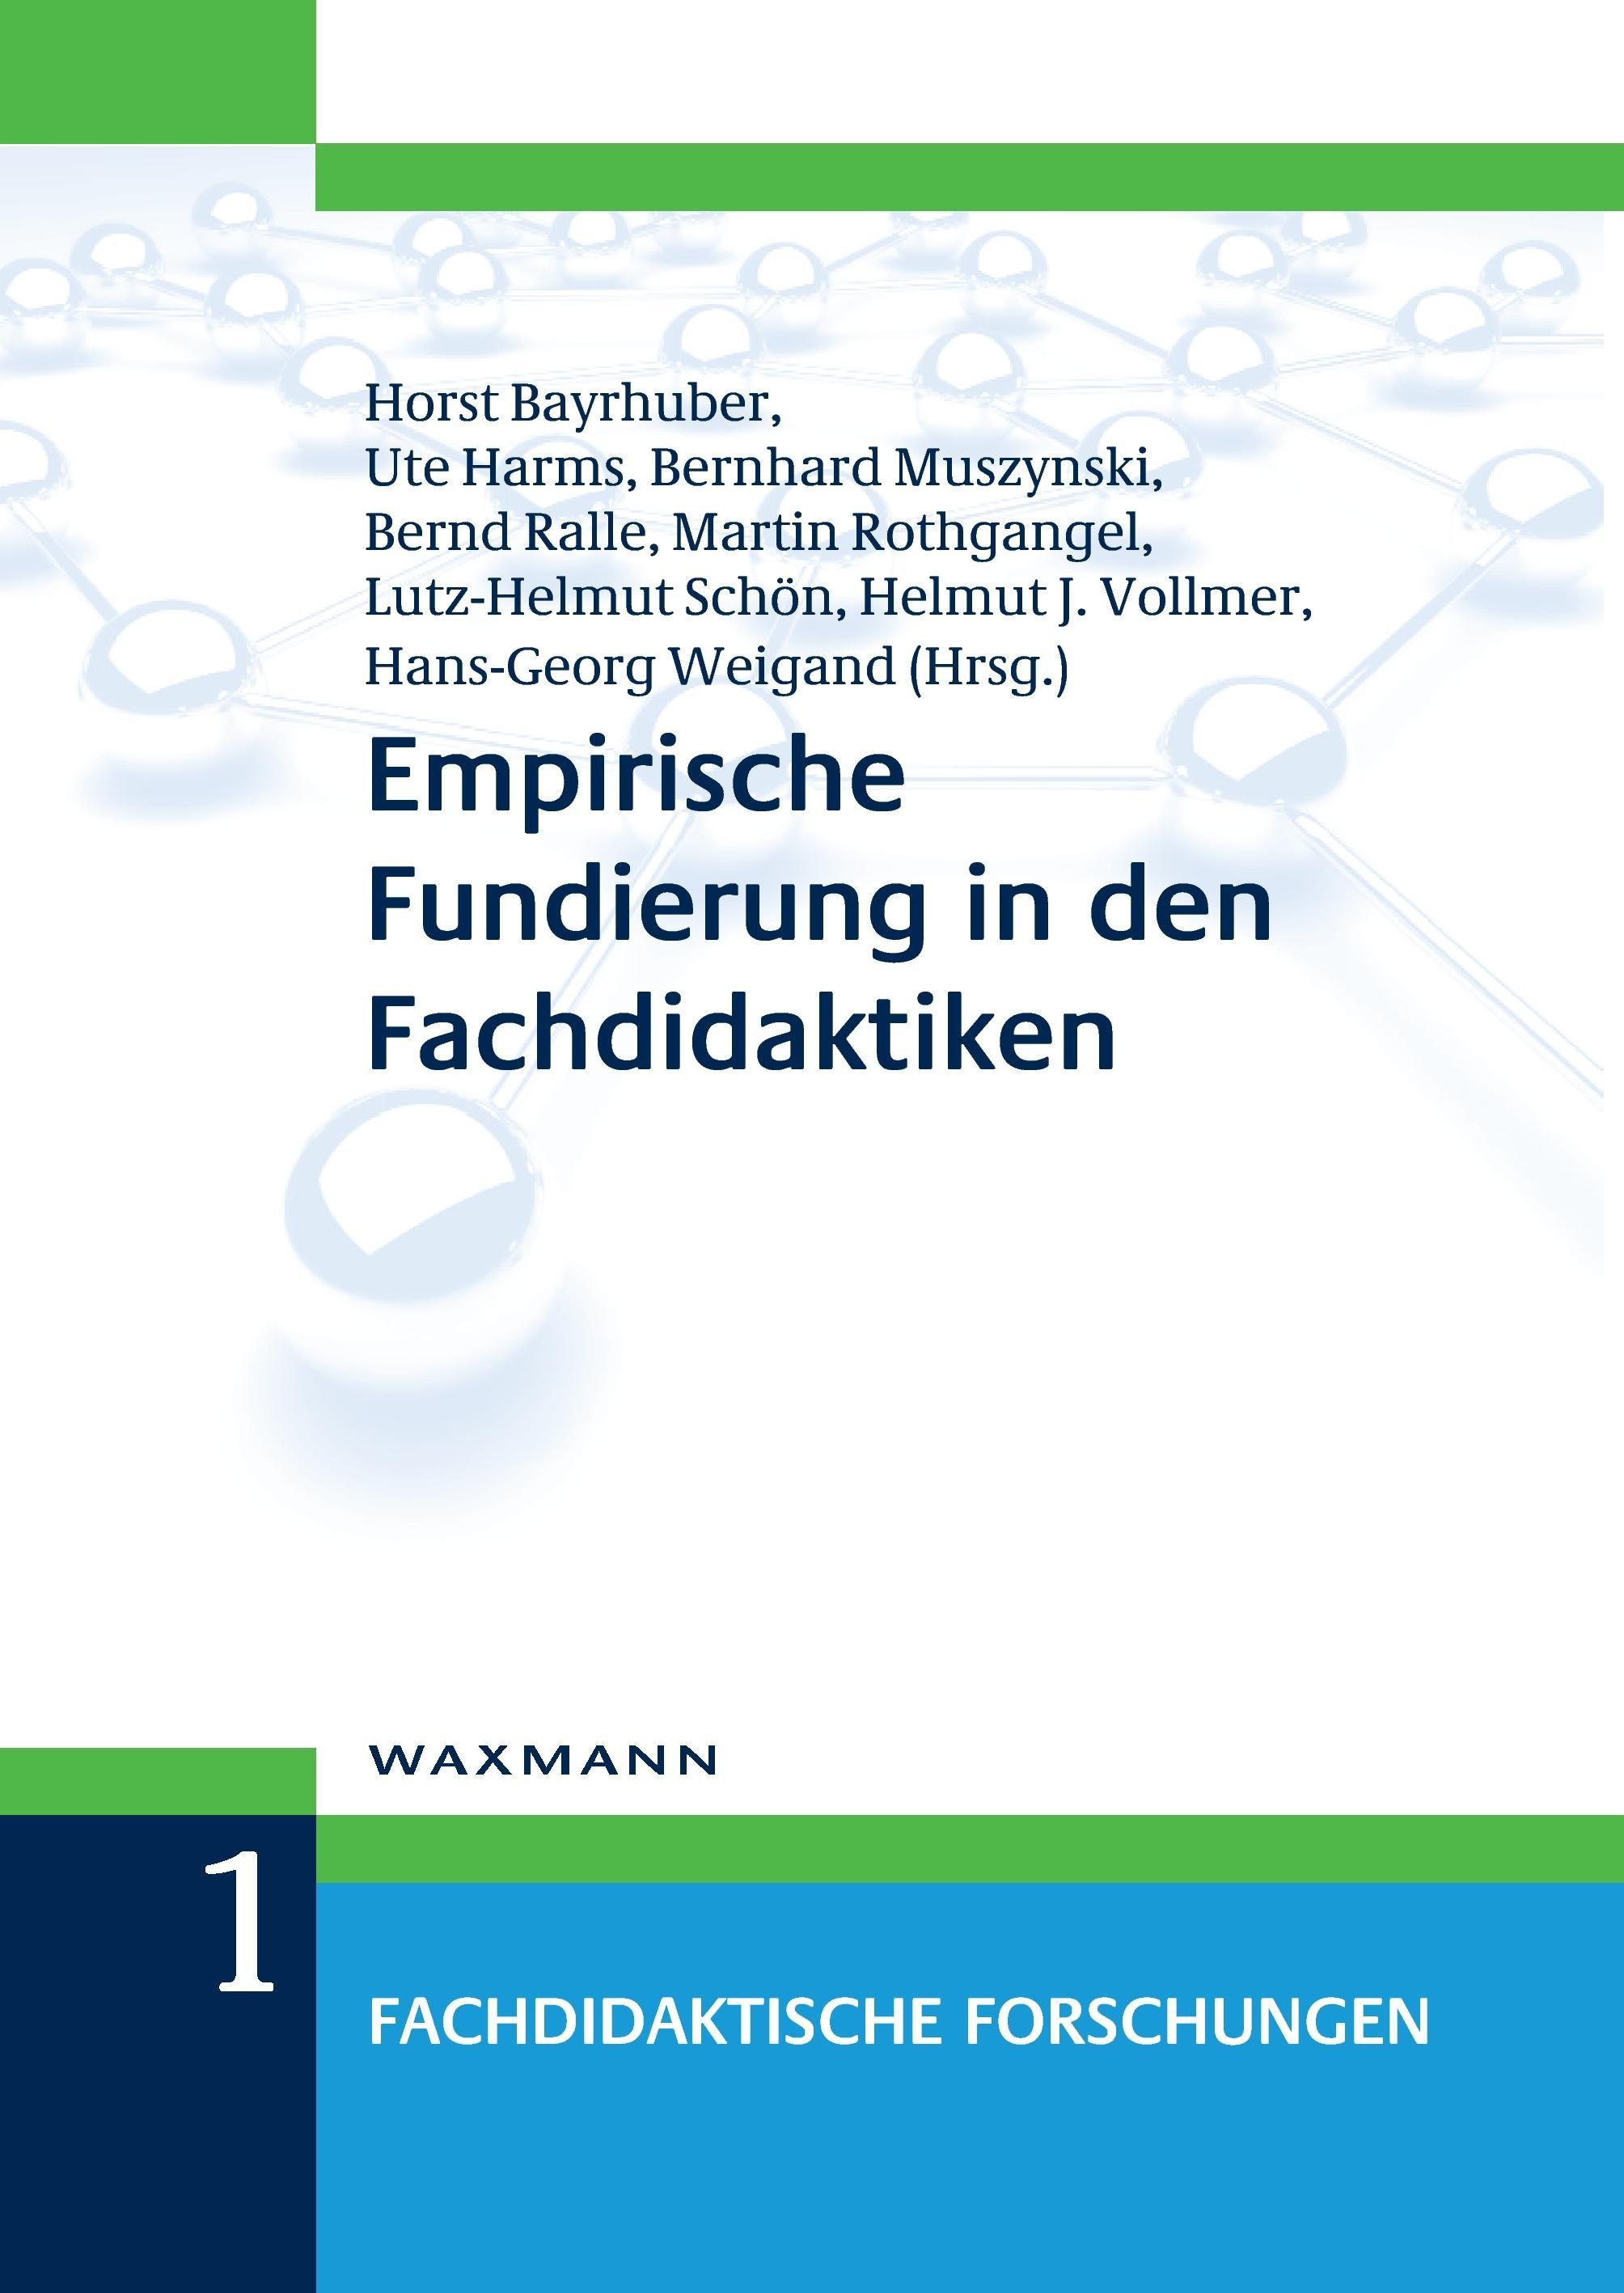 Empirische Fundierung in den Fachdidaktiken - Bayrhuber, Horst|Harms, Ute|Muszynski, Bernhard|Vollmer, Helmut Johannes